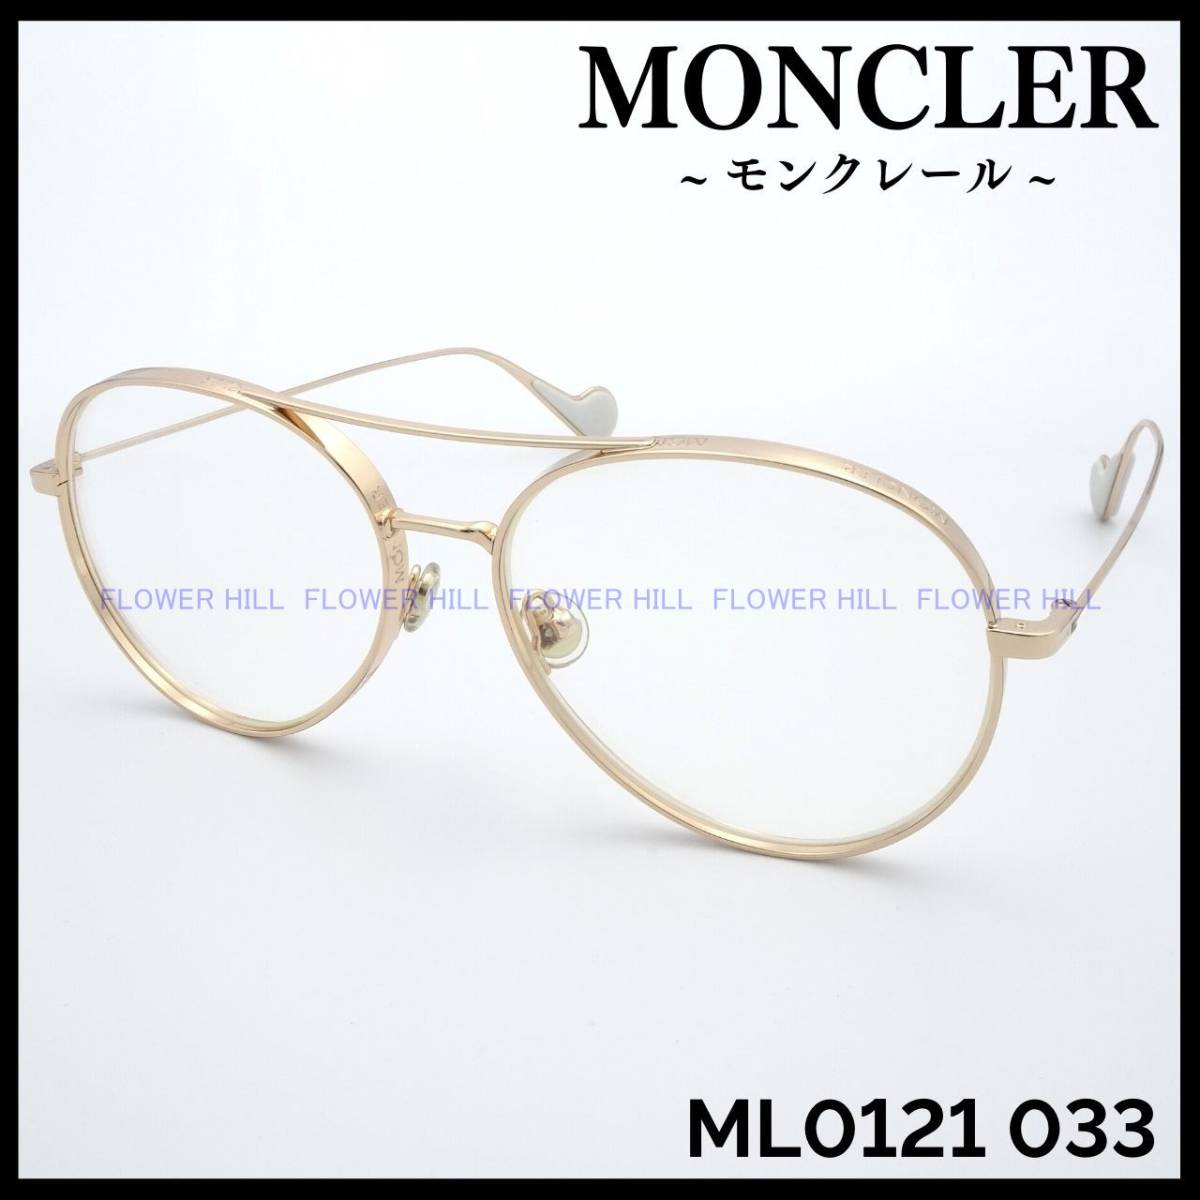 【新品・送料無料】 モンクレール MONCLER メガネ フレーム ML0121 033 ゴールド ティアドロップ イタリア製 メンズ レディース